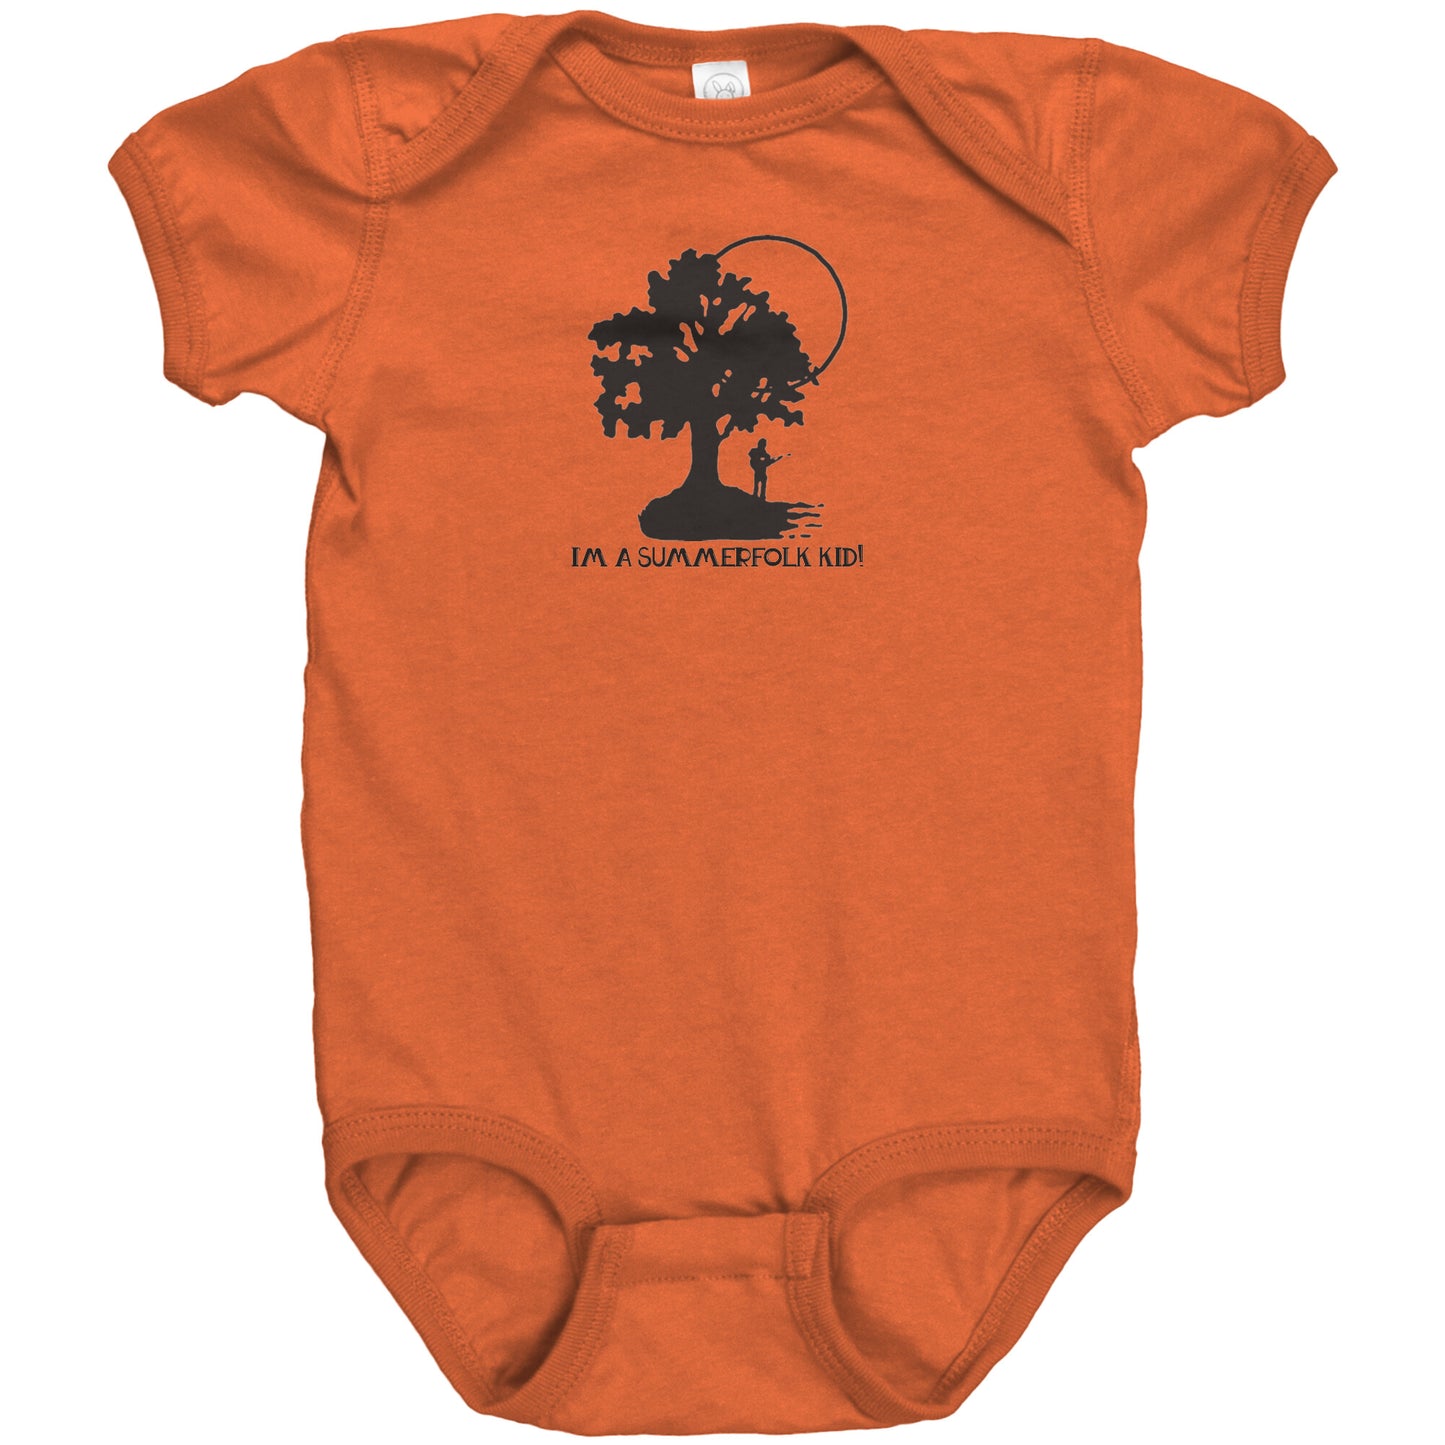 Summerfolk Kid Baby Bodysuit (online only)